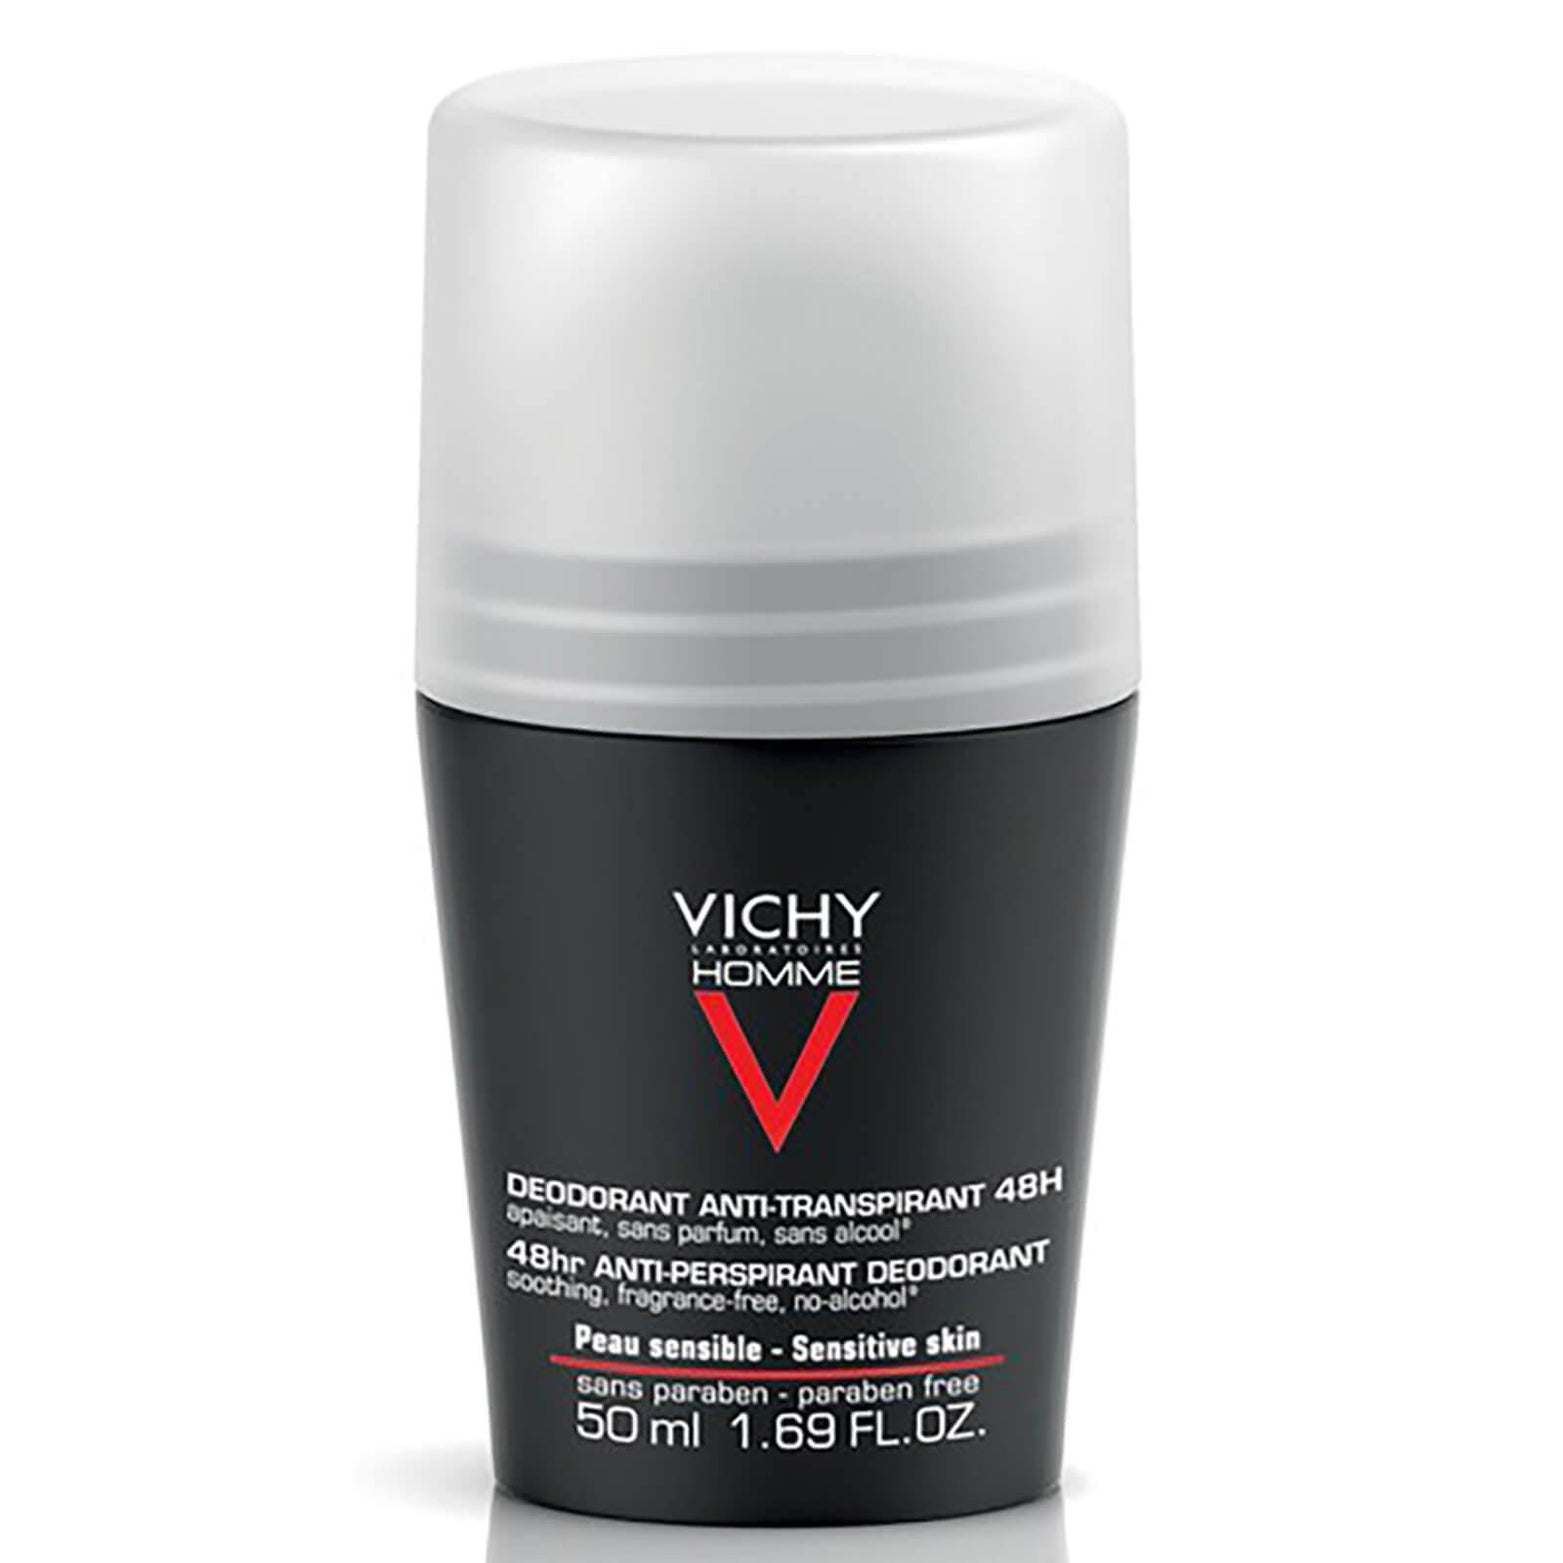 Vichy Homme Men's Deodorant for Sensitive Skin Roll-On 50ml - Med7 Online